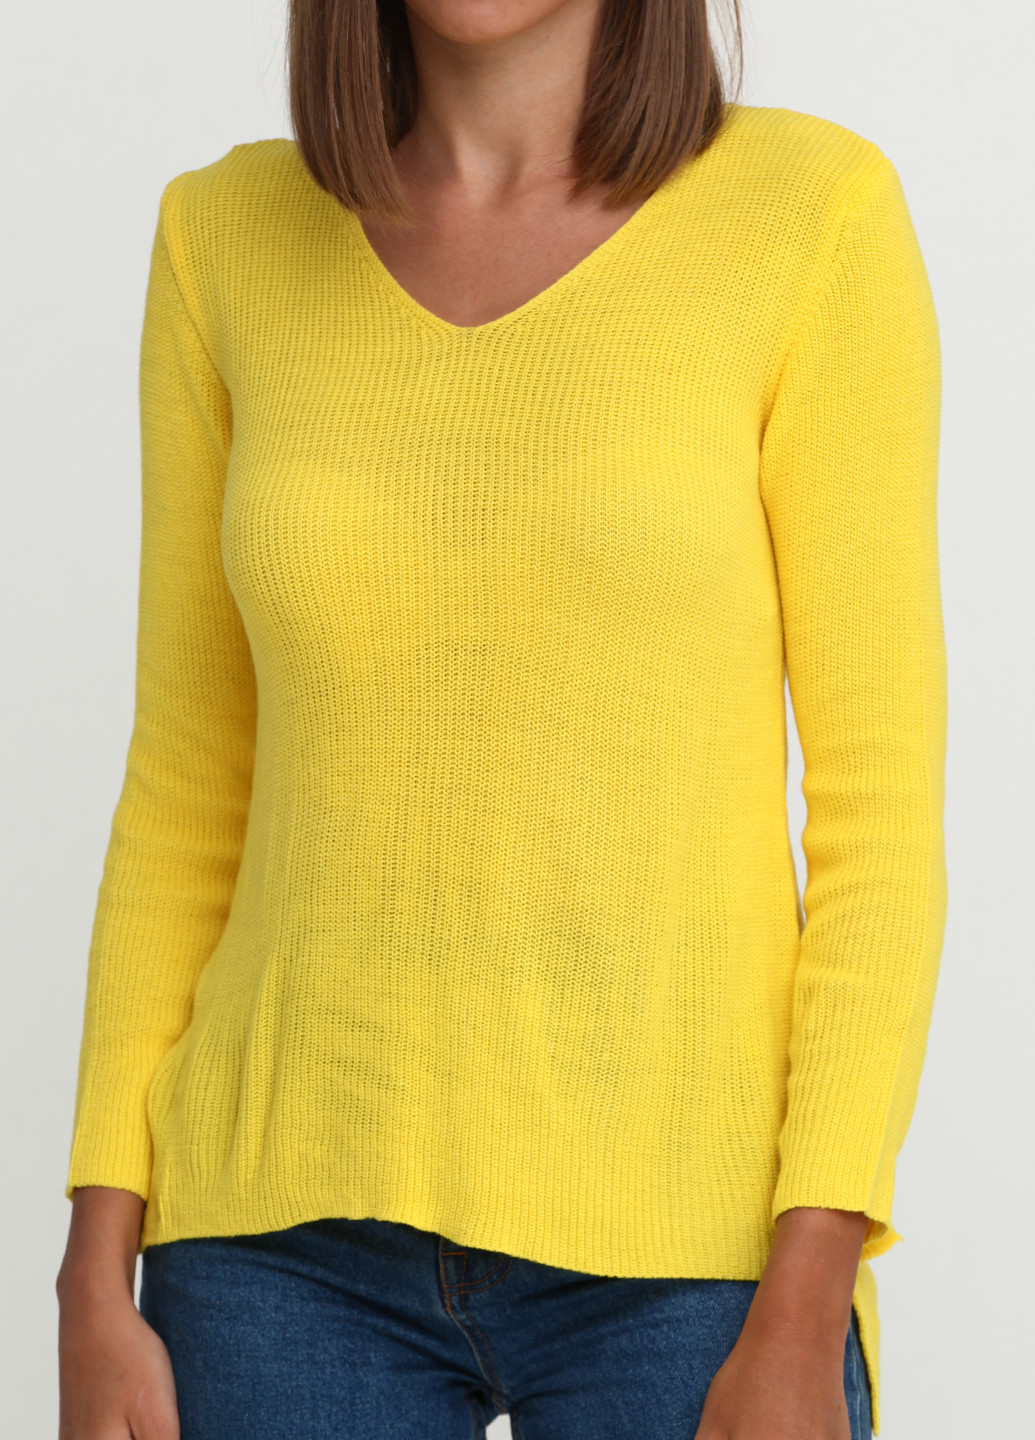 Жовтий демісезонний пуловер пуловер Akdeniz